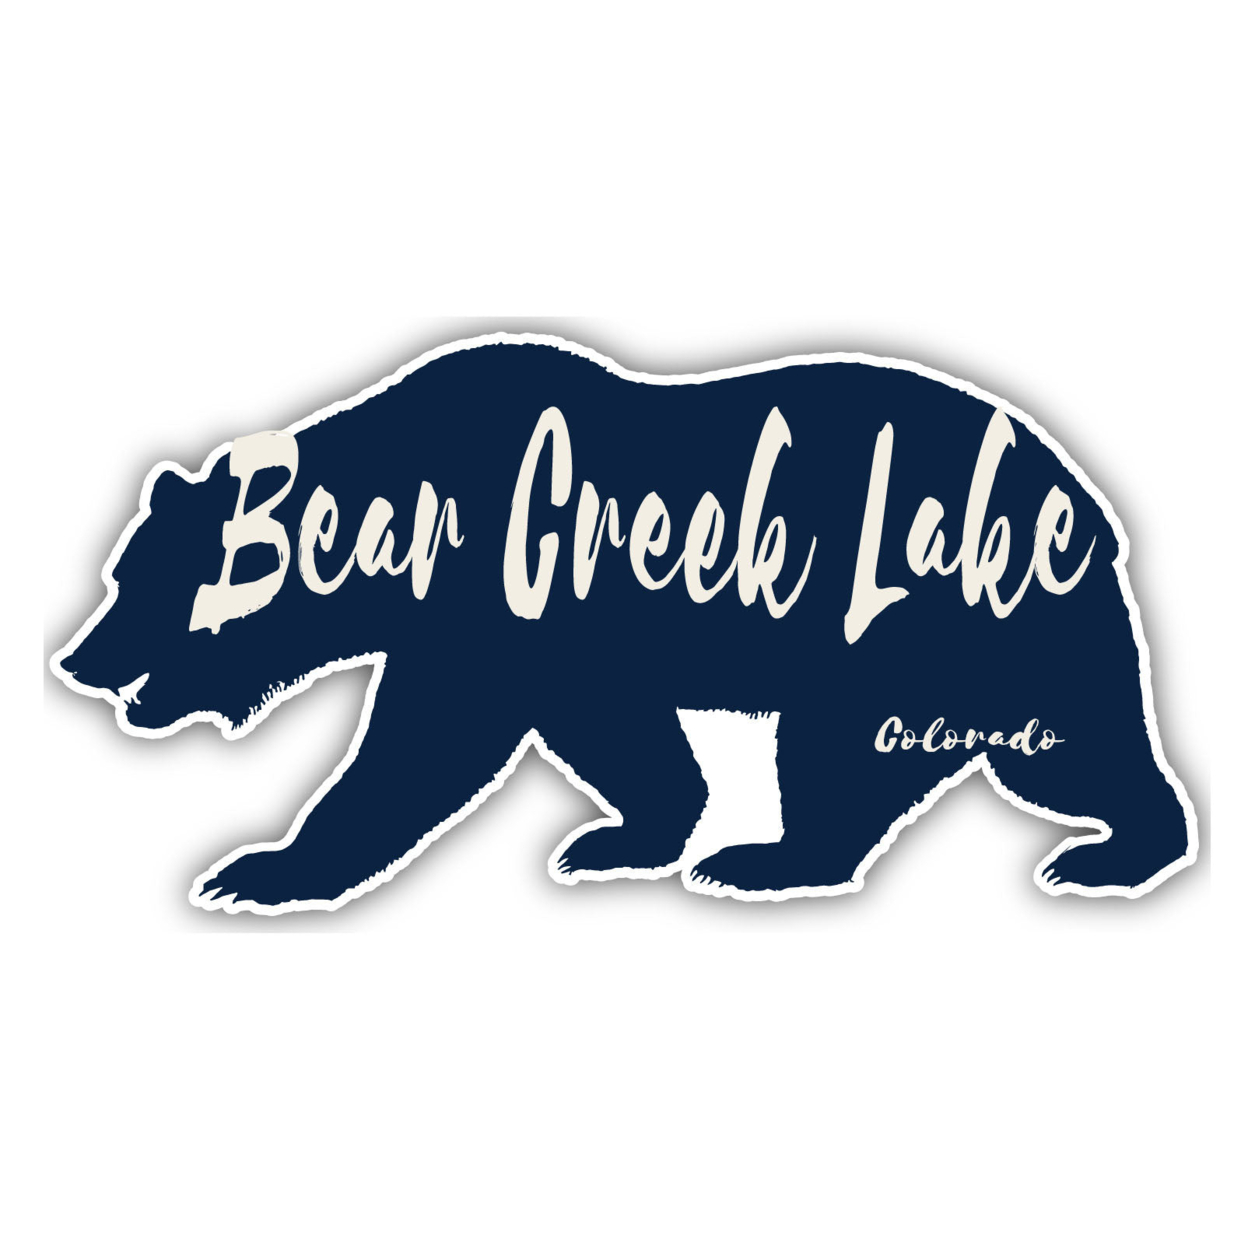 Bear Creek Lake Colorado Souvenir Decorative Stickers (Choose Theme And Size) - Single Unit, 6-Inch, Bear